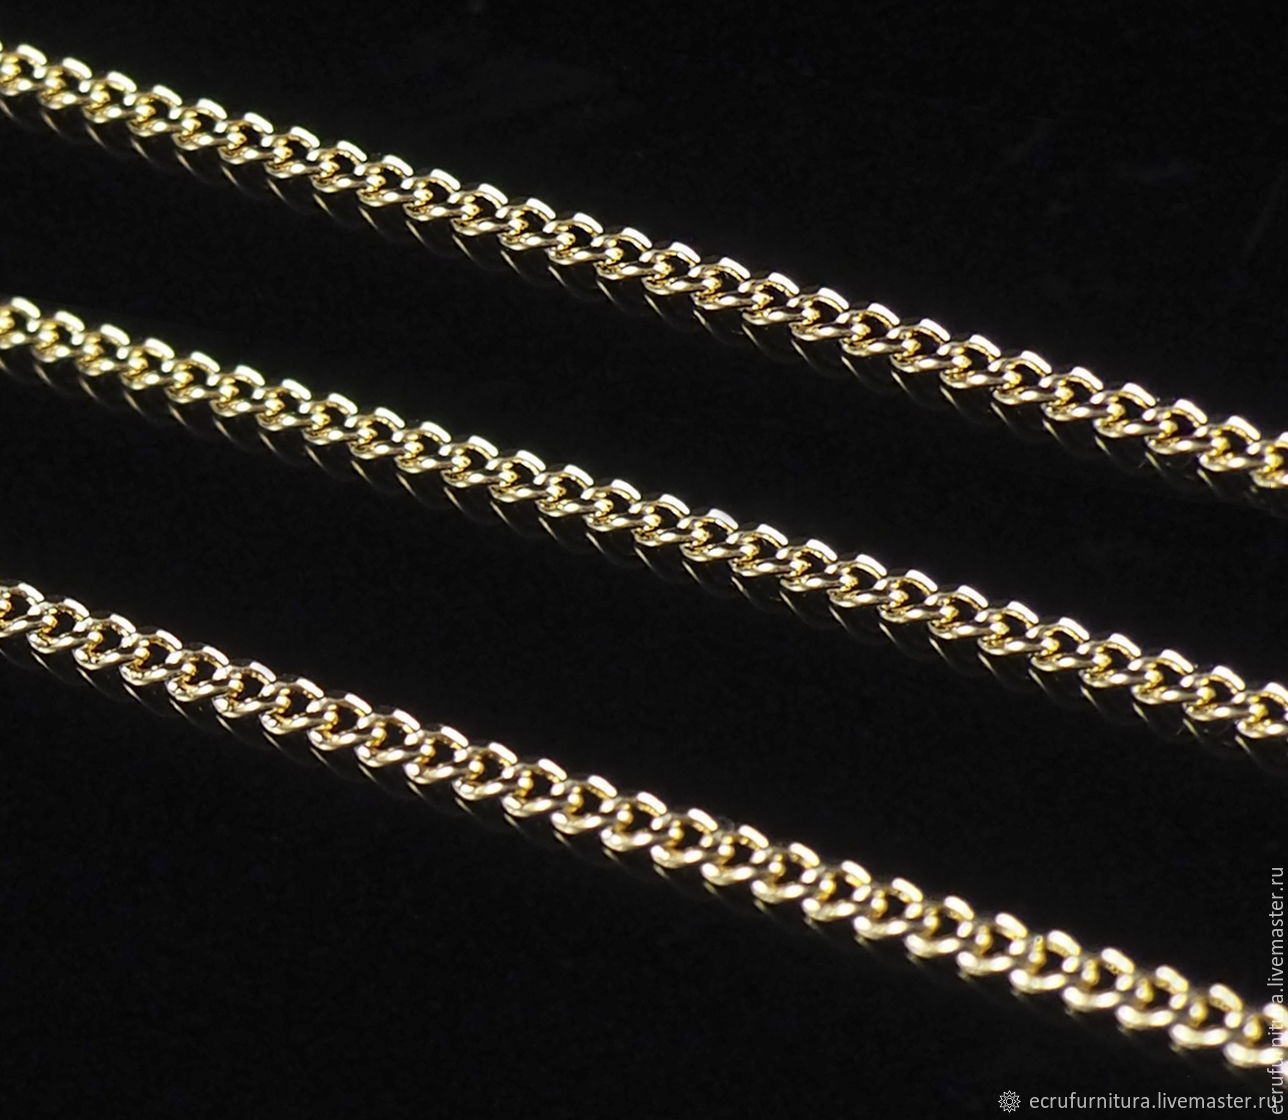 Плетение цепочек из золота панцирное